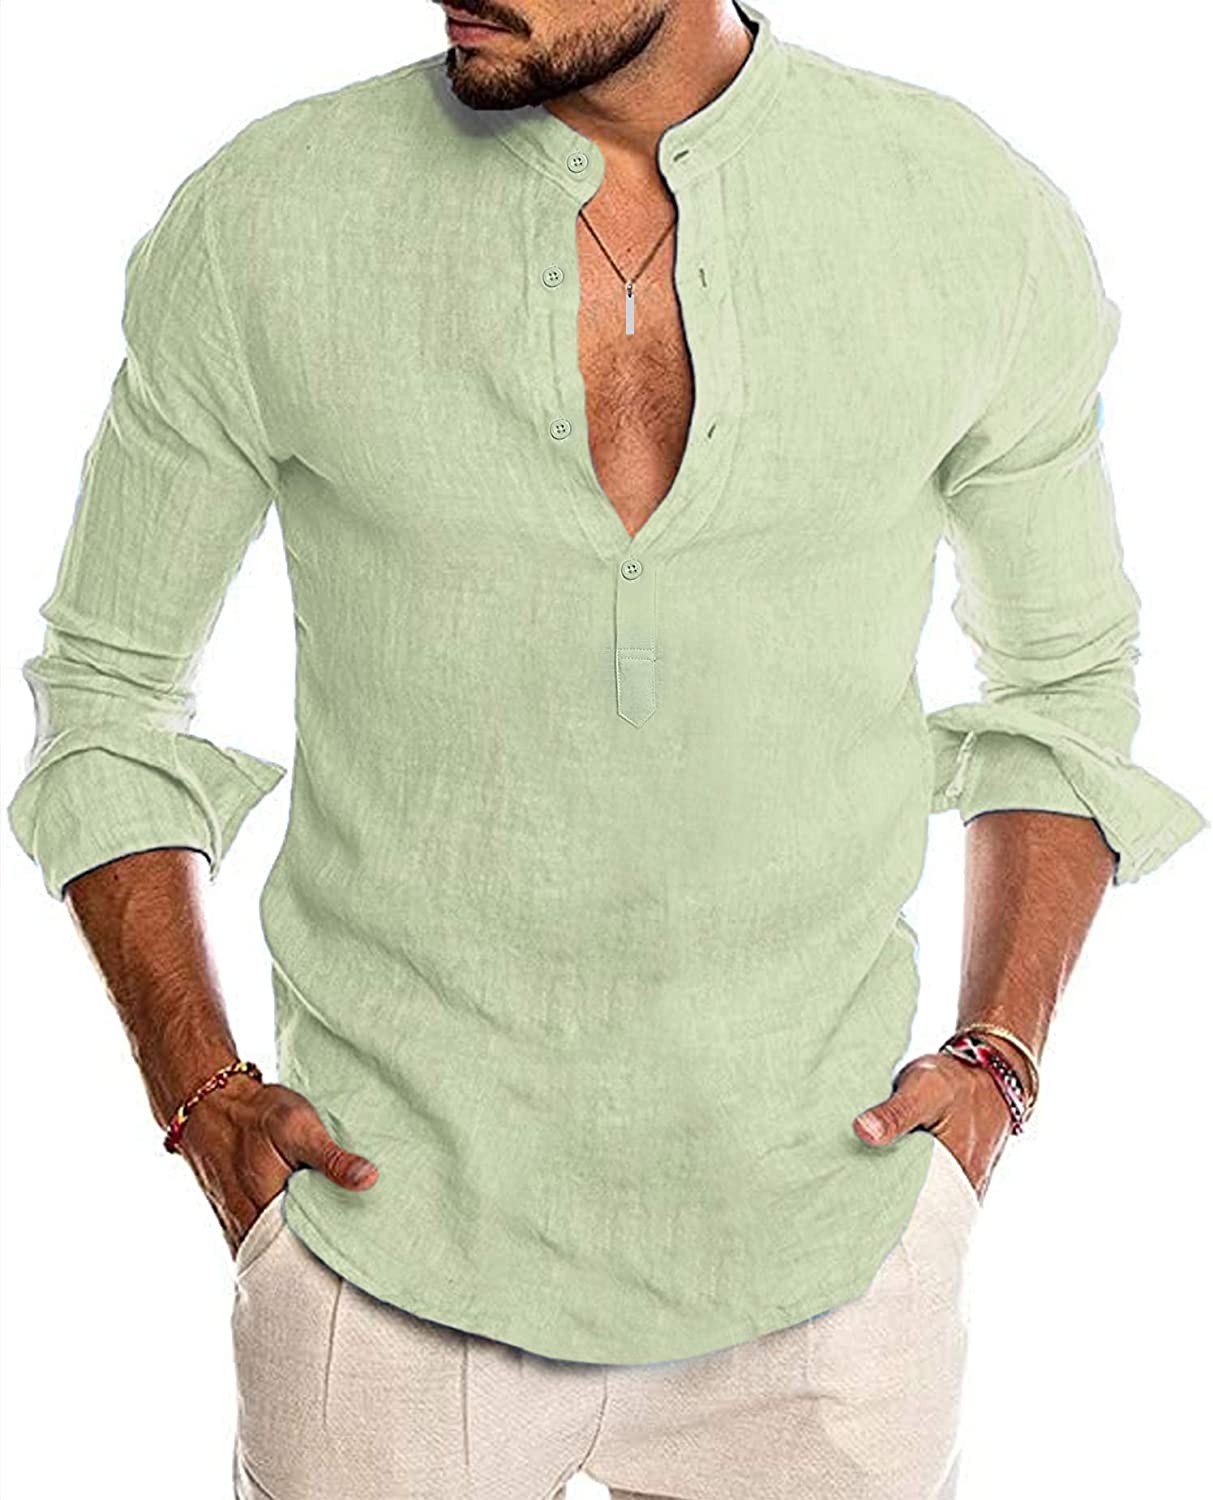 LecGee Men's Cotton Linen Henley Shirt Casual Long Sleeve Hippie T Shirt Beach Yoga Tops 